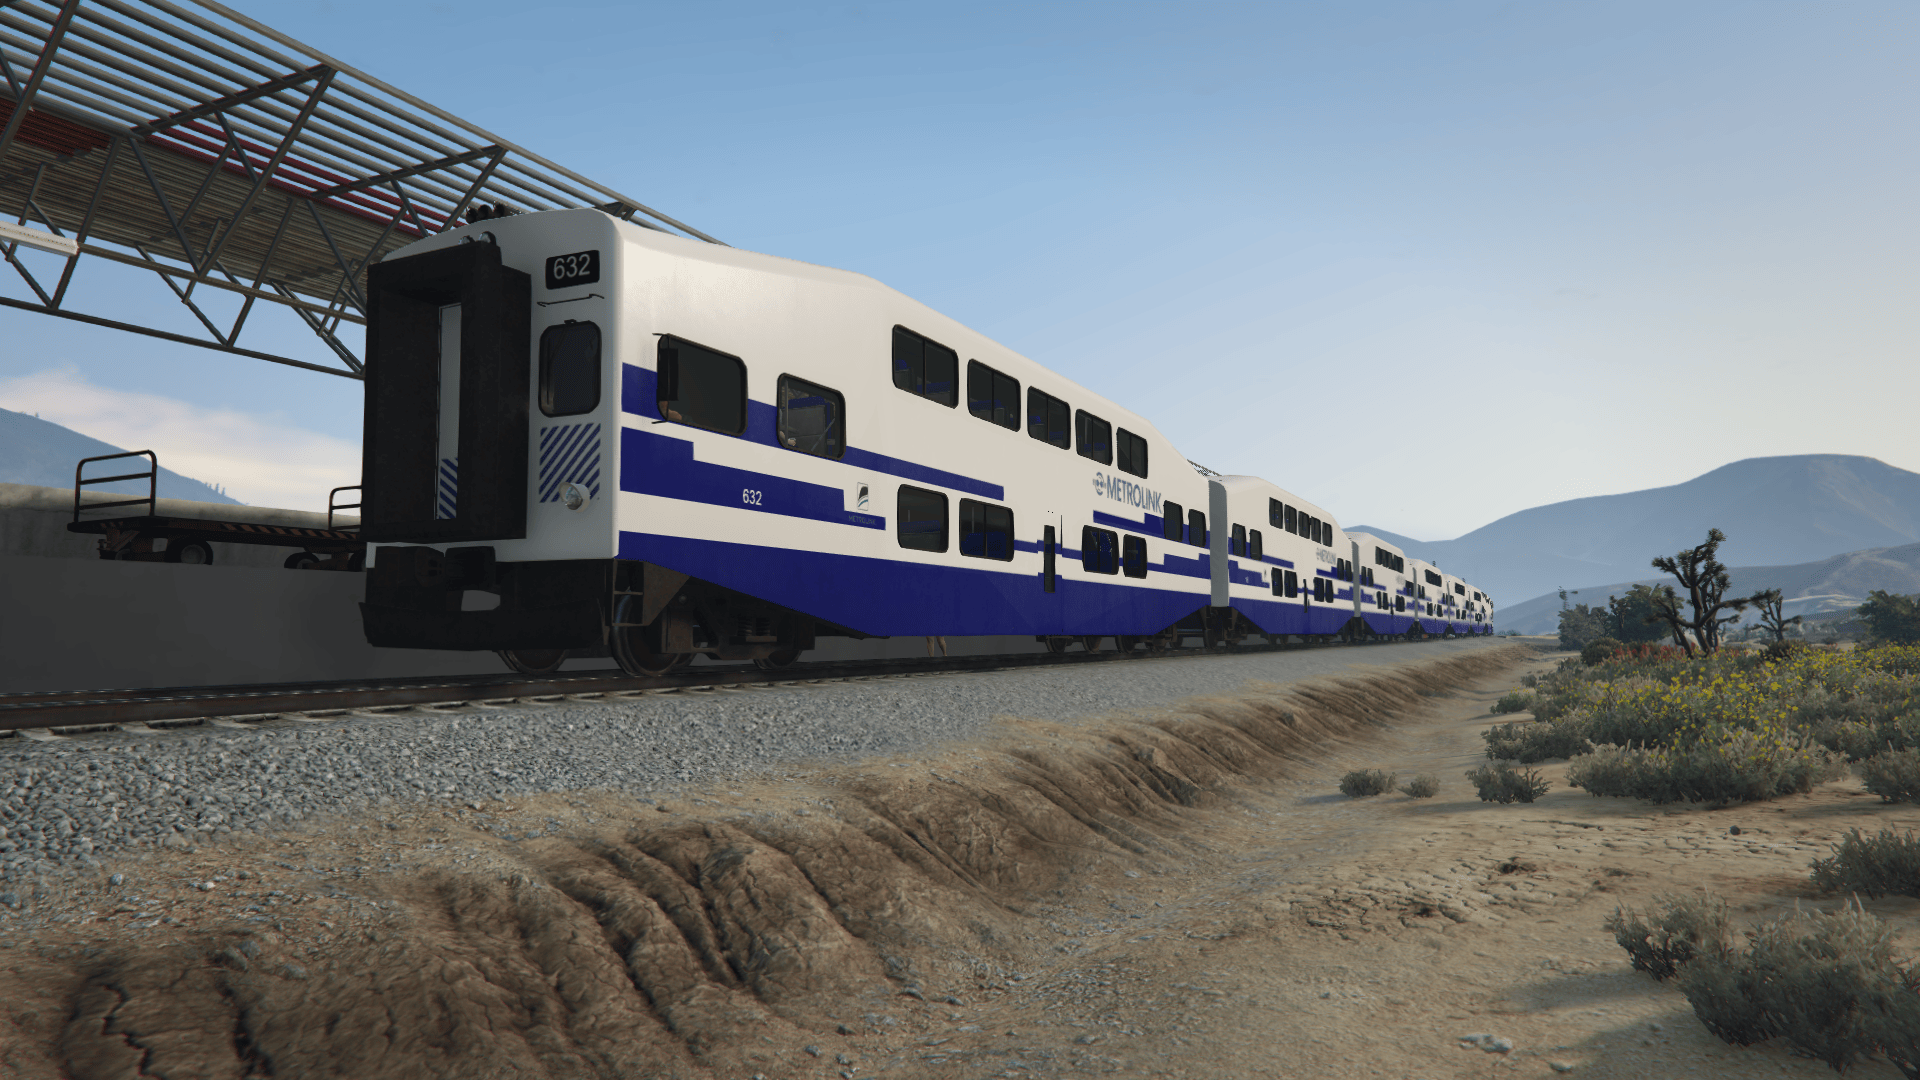 Gta 5 overhauled trains фото 7